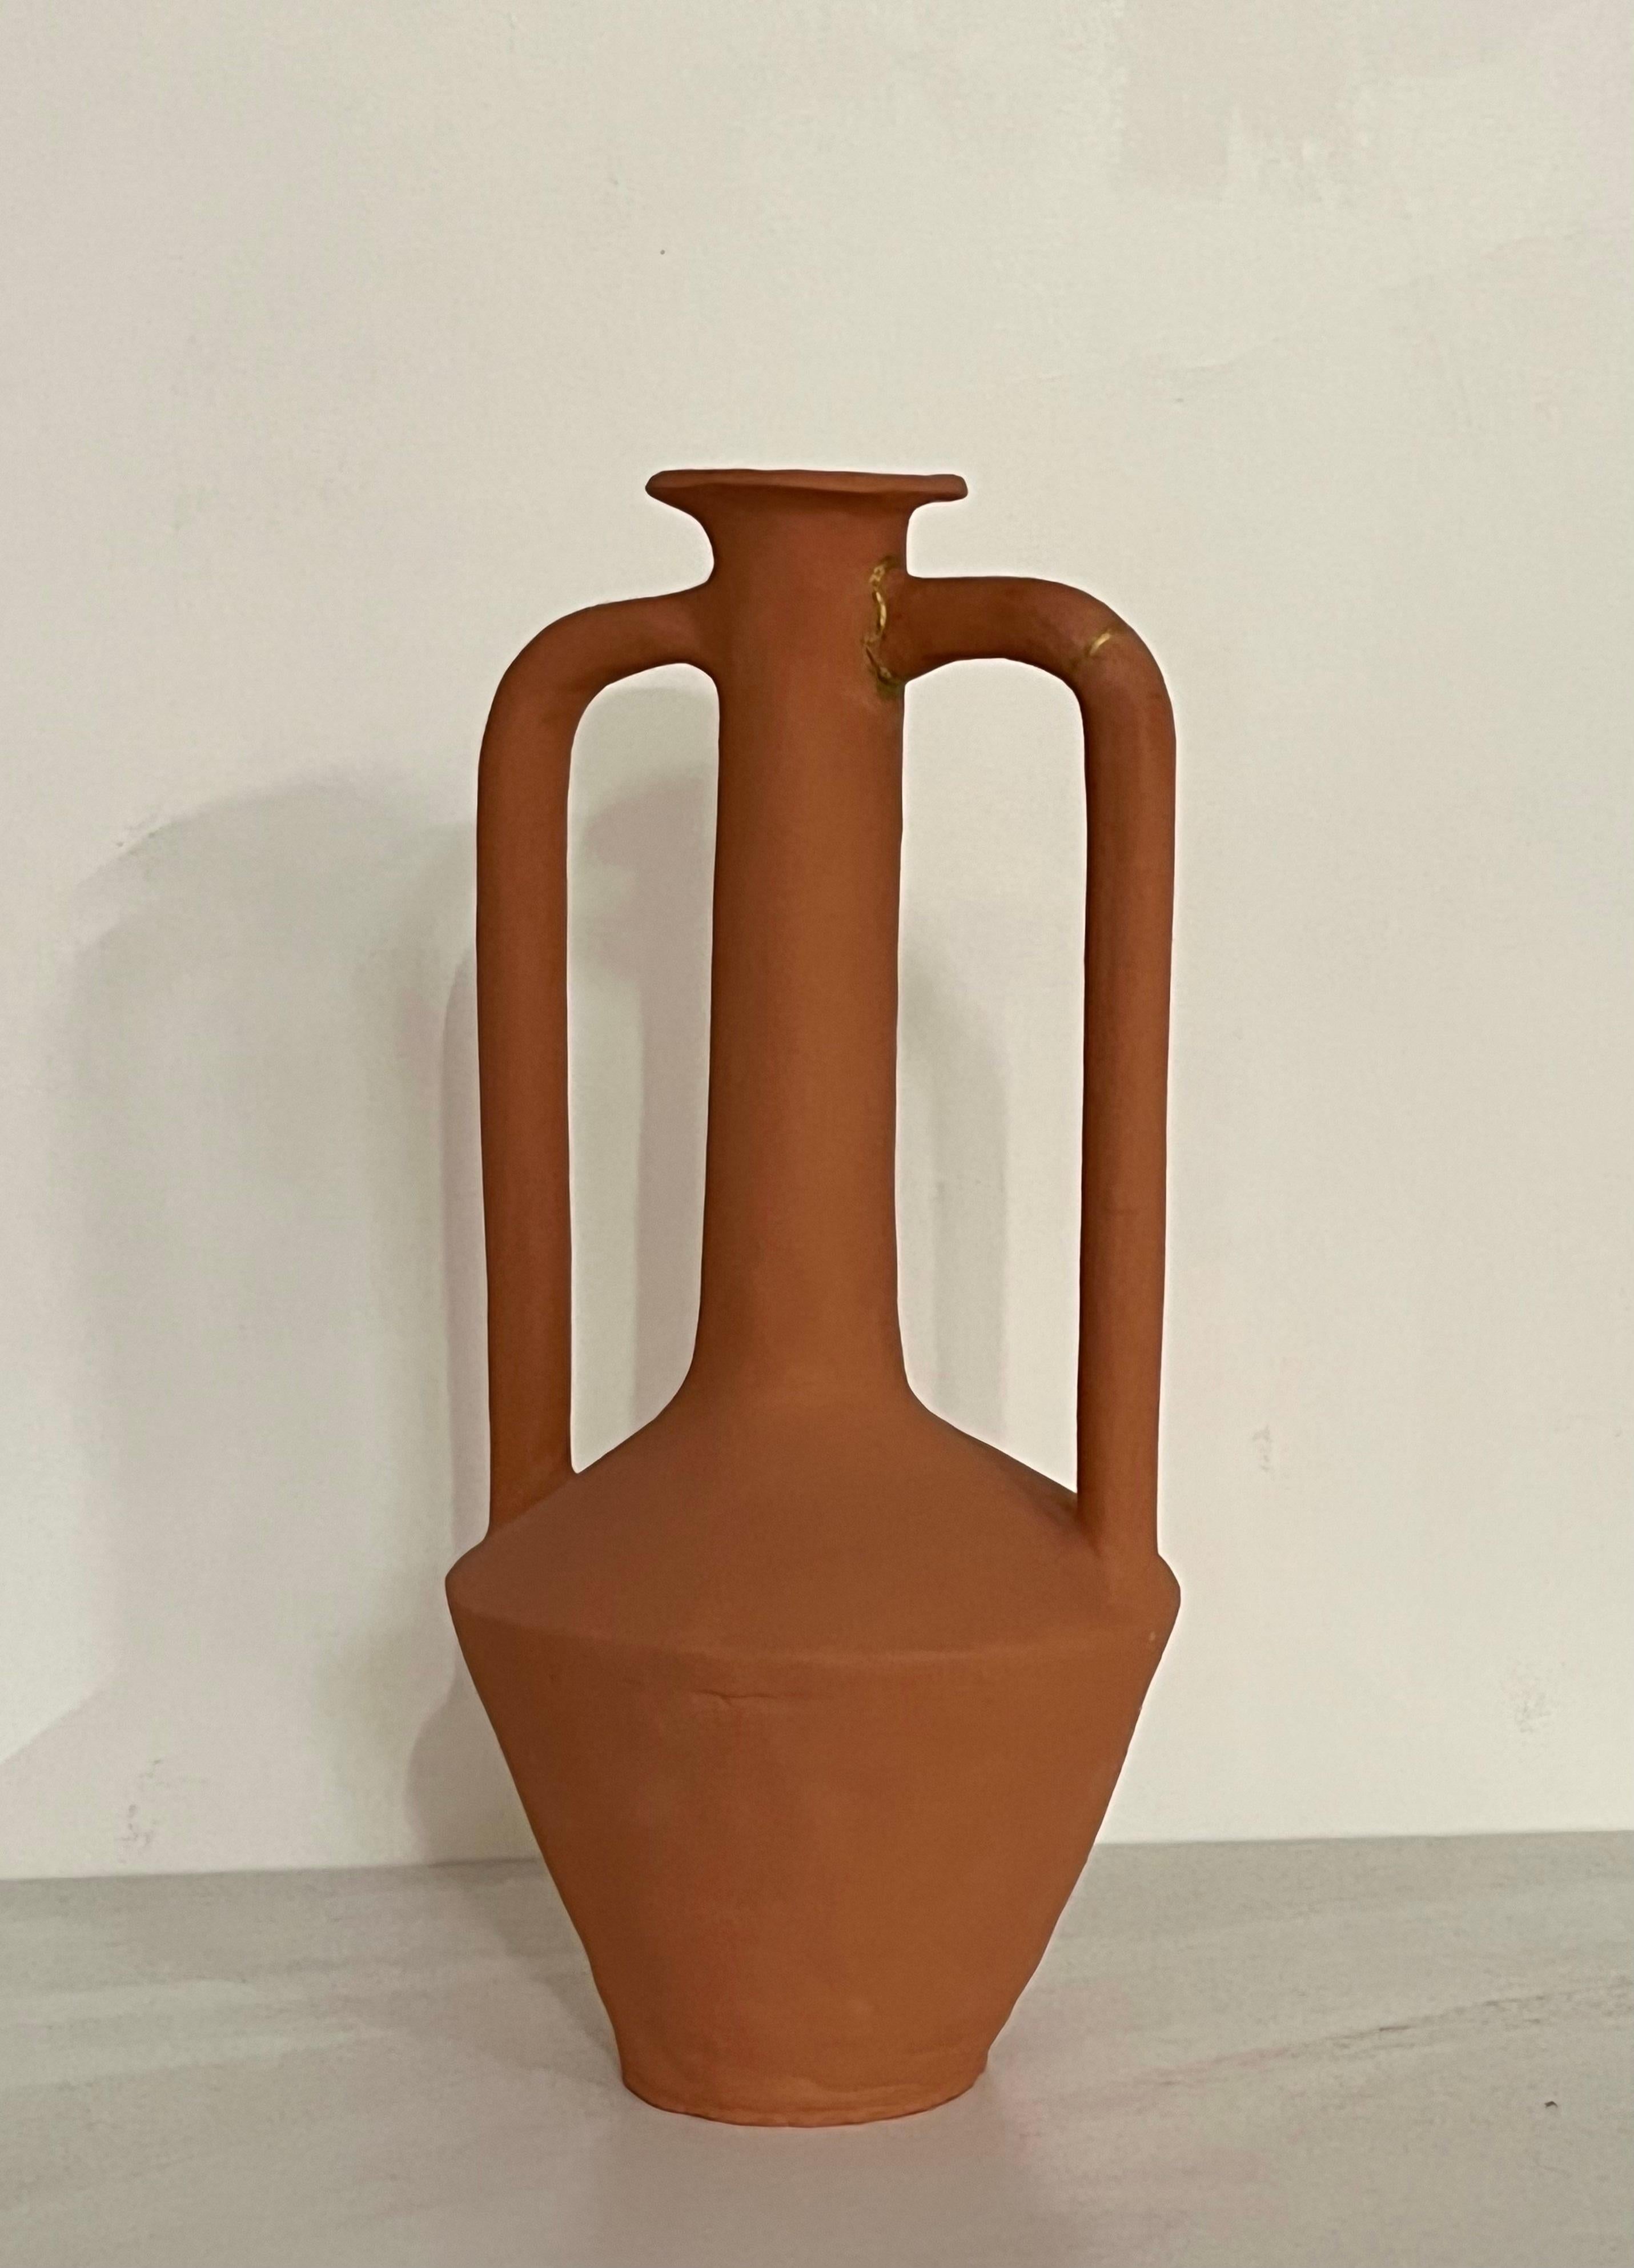 Vase à long col en terre cuite de Solem Ceramics
Dimensions : Ø 15 x H 38 cm.
Matériaux : Grès rouge, engobe de terre cuite.

L'œuvre de Solem puise dans les souvenirs de l'architecture et de la communauté de SWANA et de l'Asie du Sud-Est en